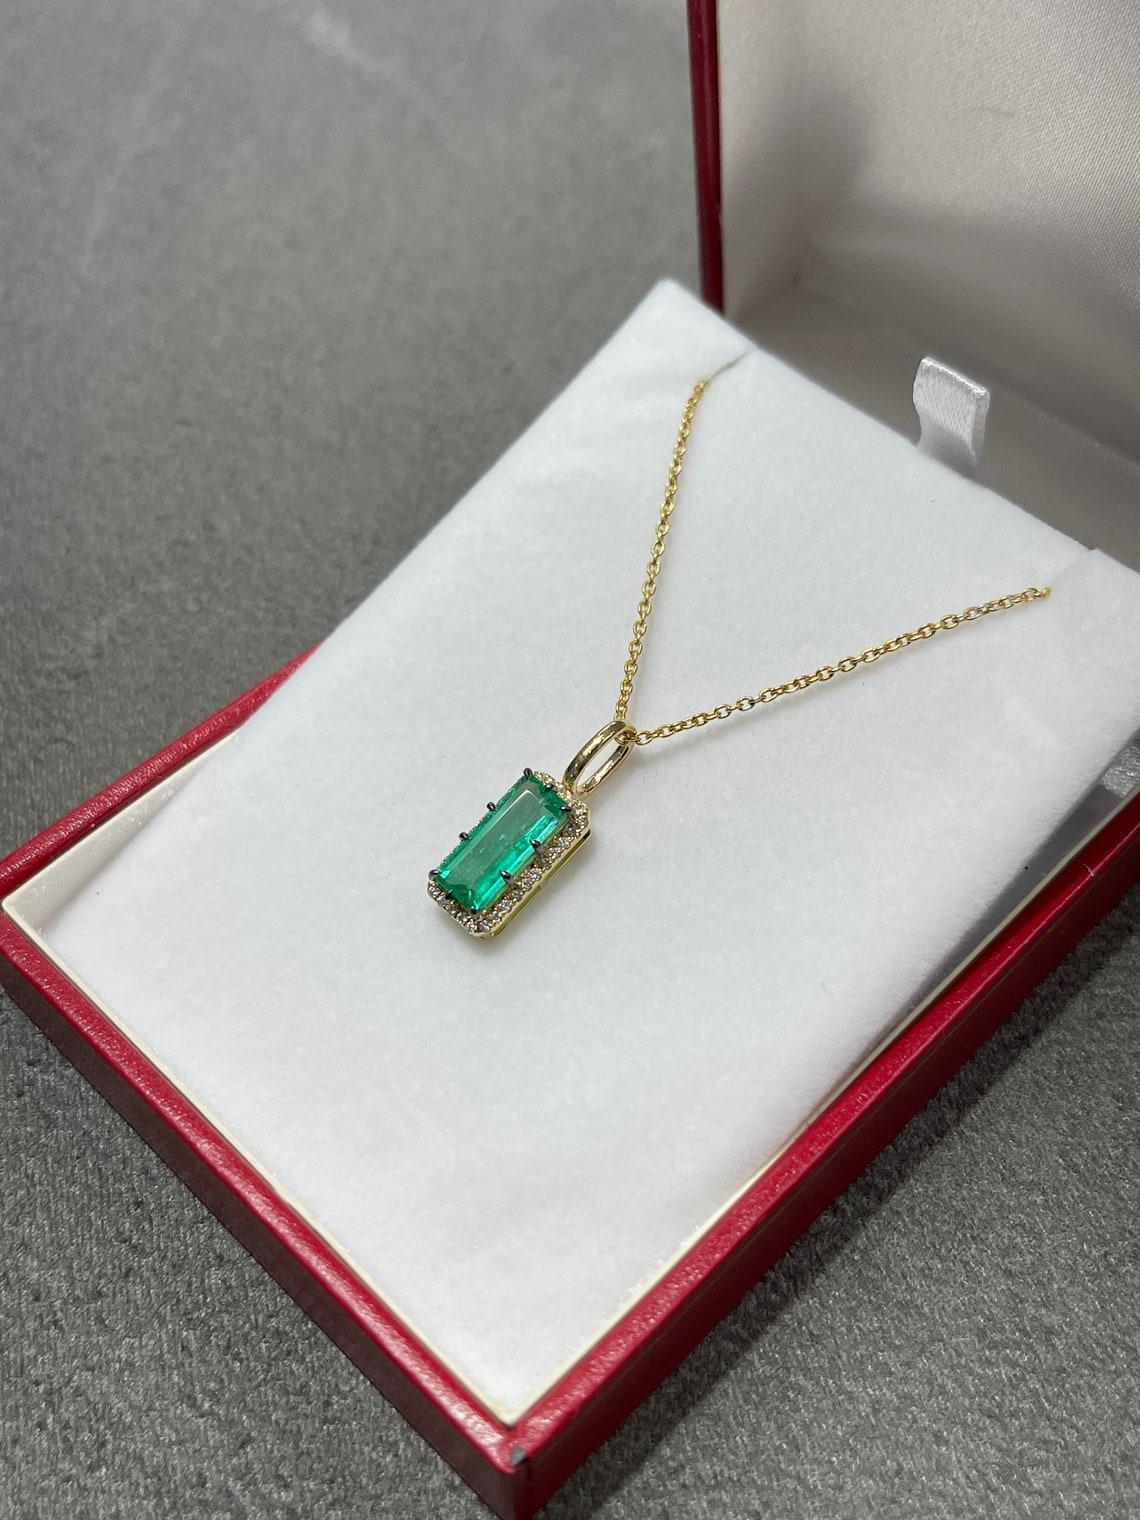 emerald cut diamond necklace gold